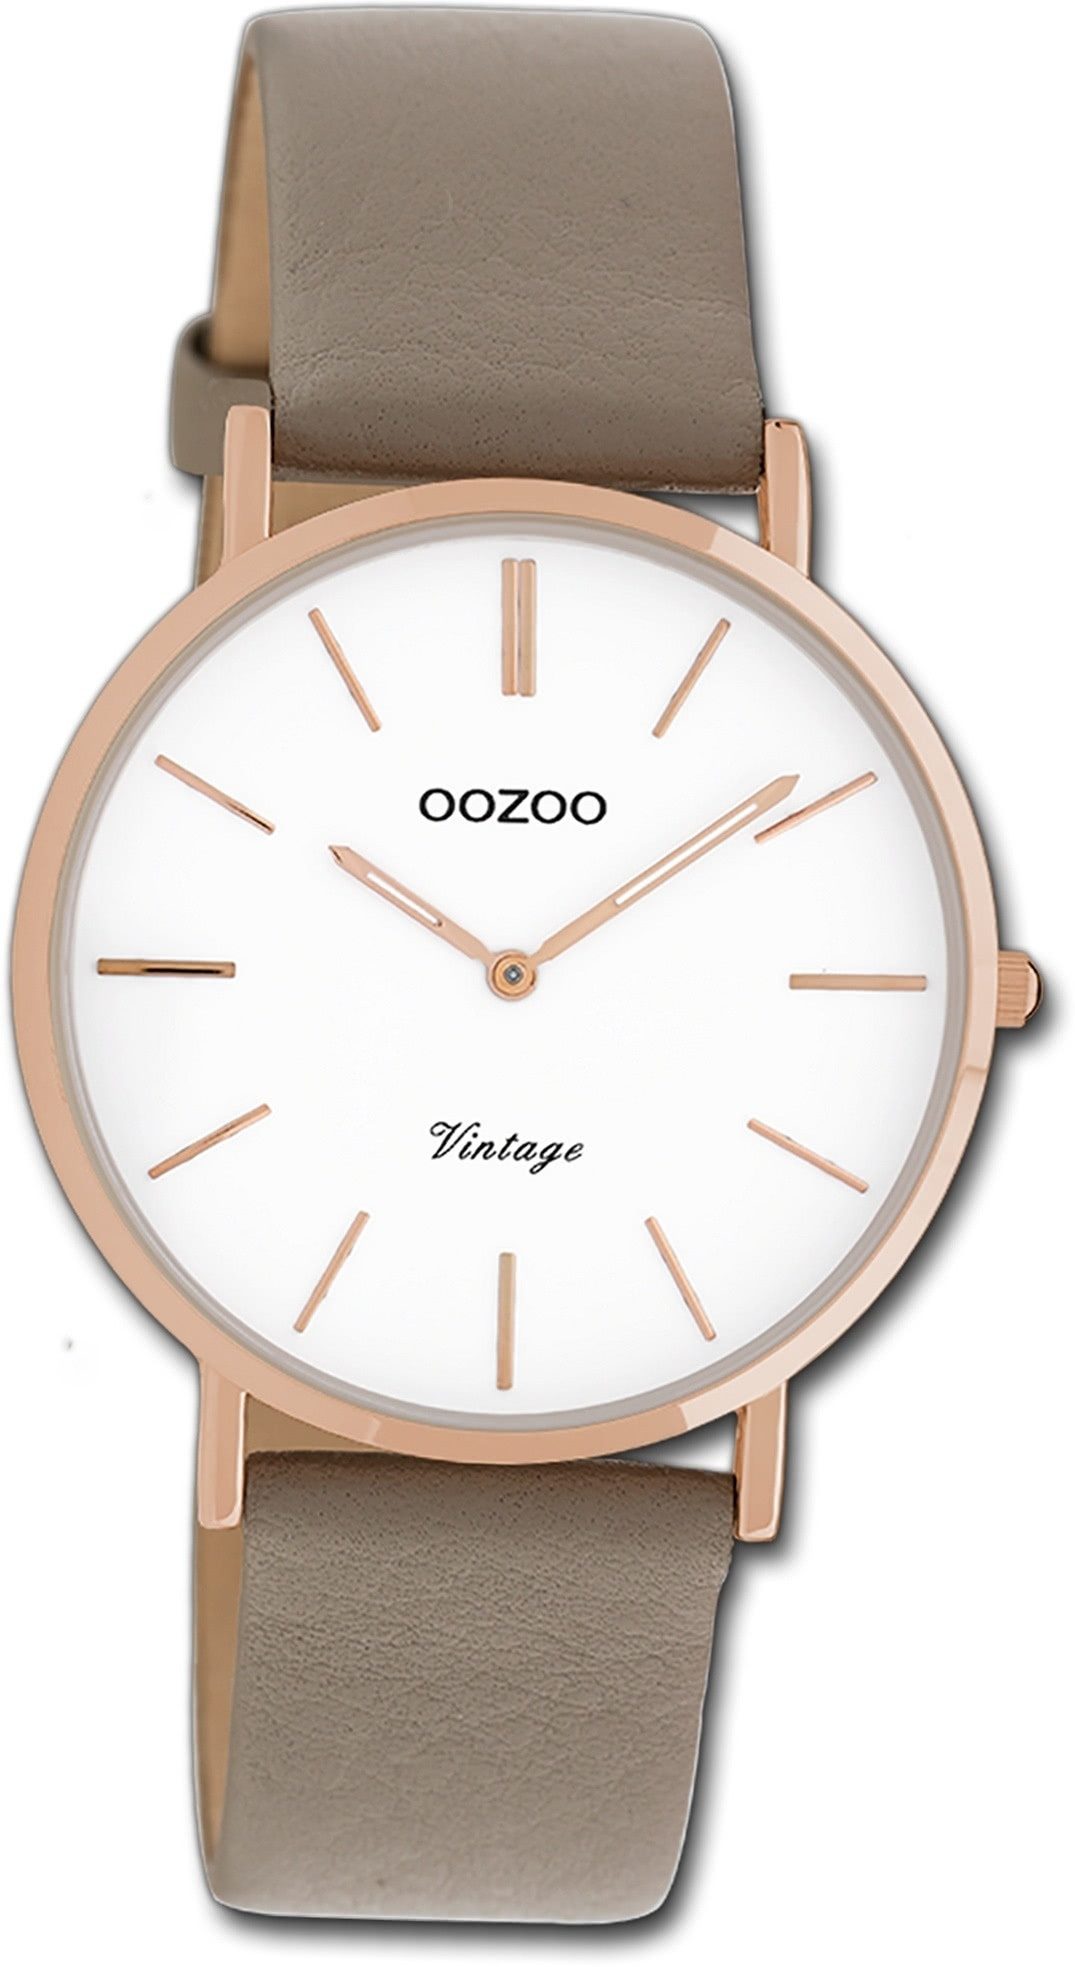 OOZOO Quarzuhr Oozoo Damen Armbanduhr Vintage Series, (Analoguhr), Damenuhr Lederarmband taupe, braun, rundes Gehäuse, mittel (ca. 36mm)